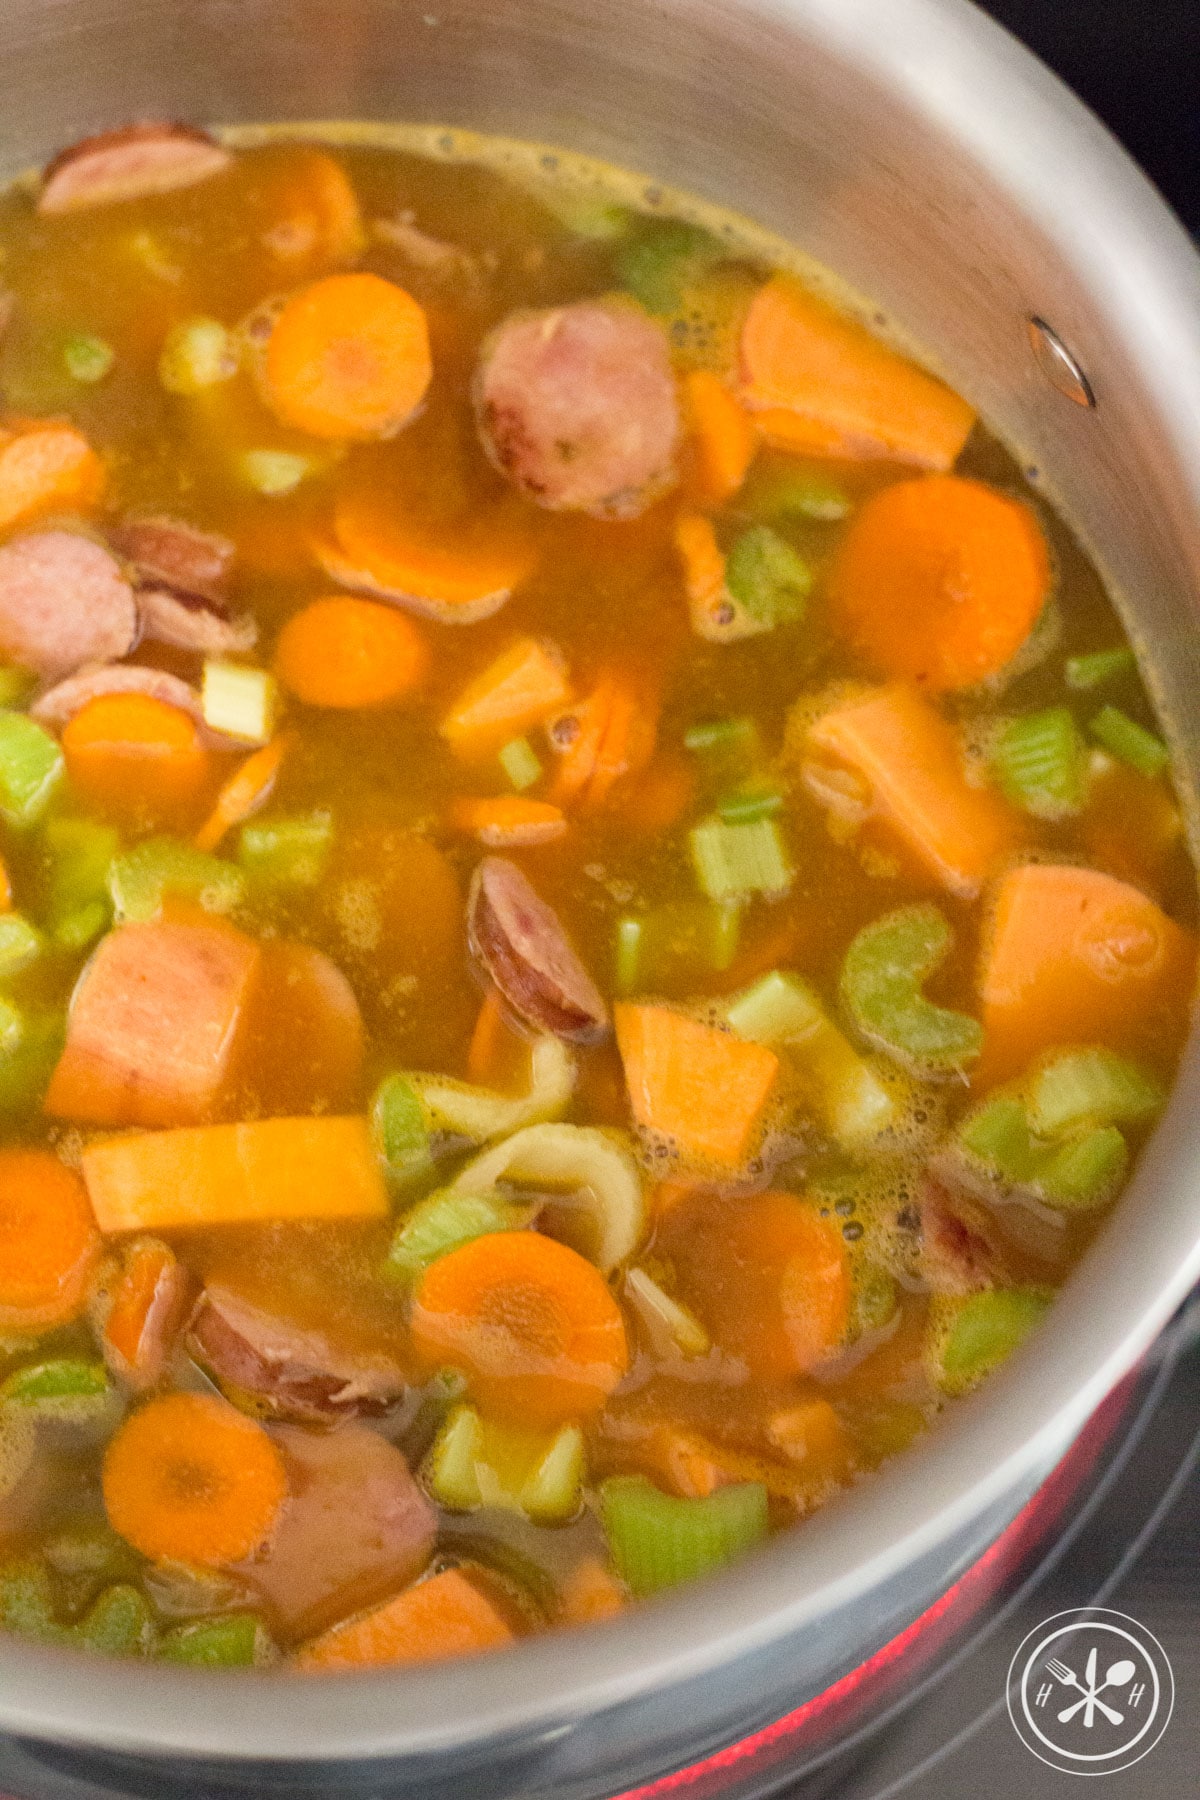 soup cooking with veggies and kielbasa sausage-1